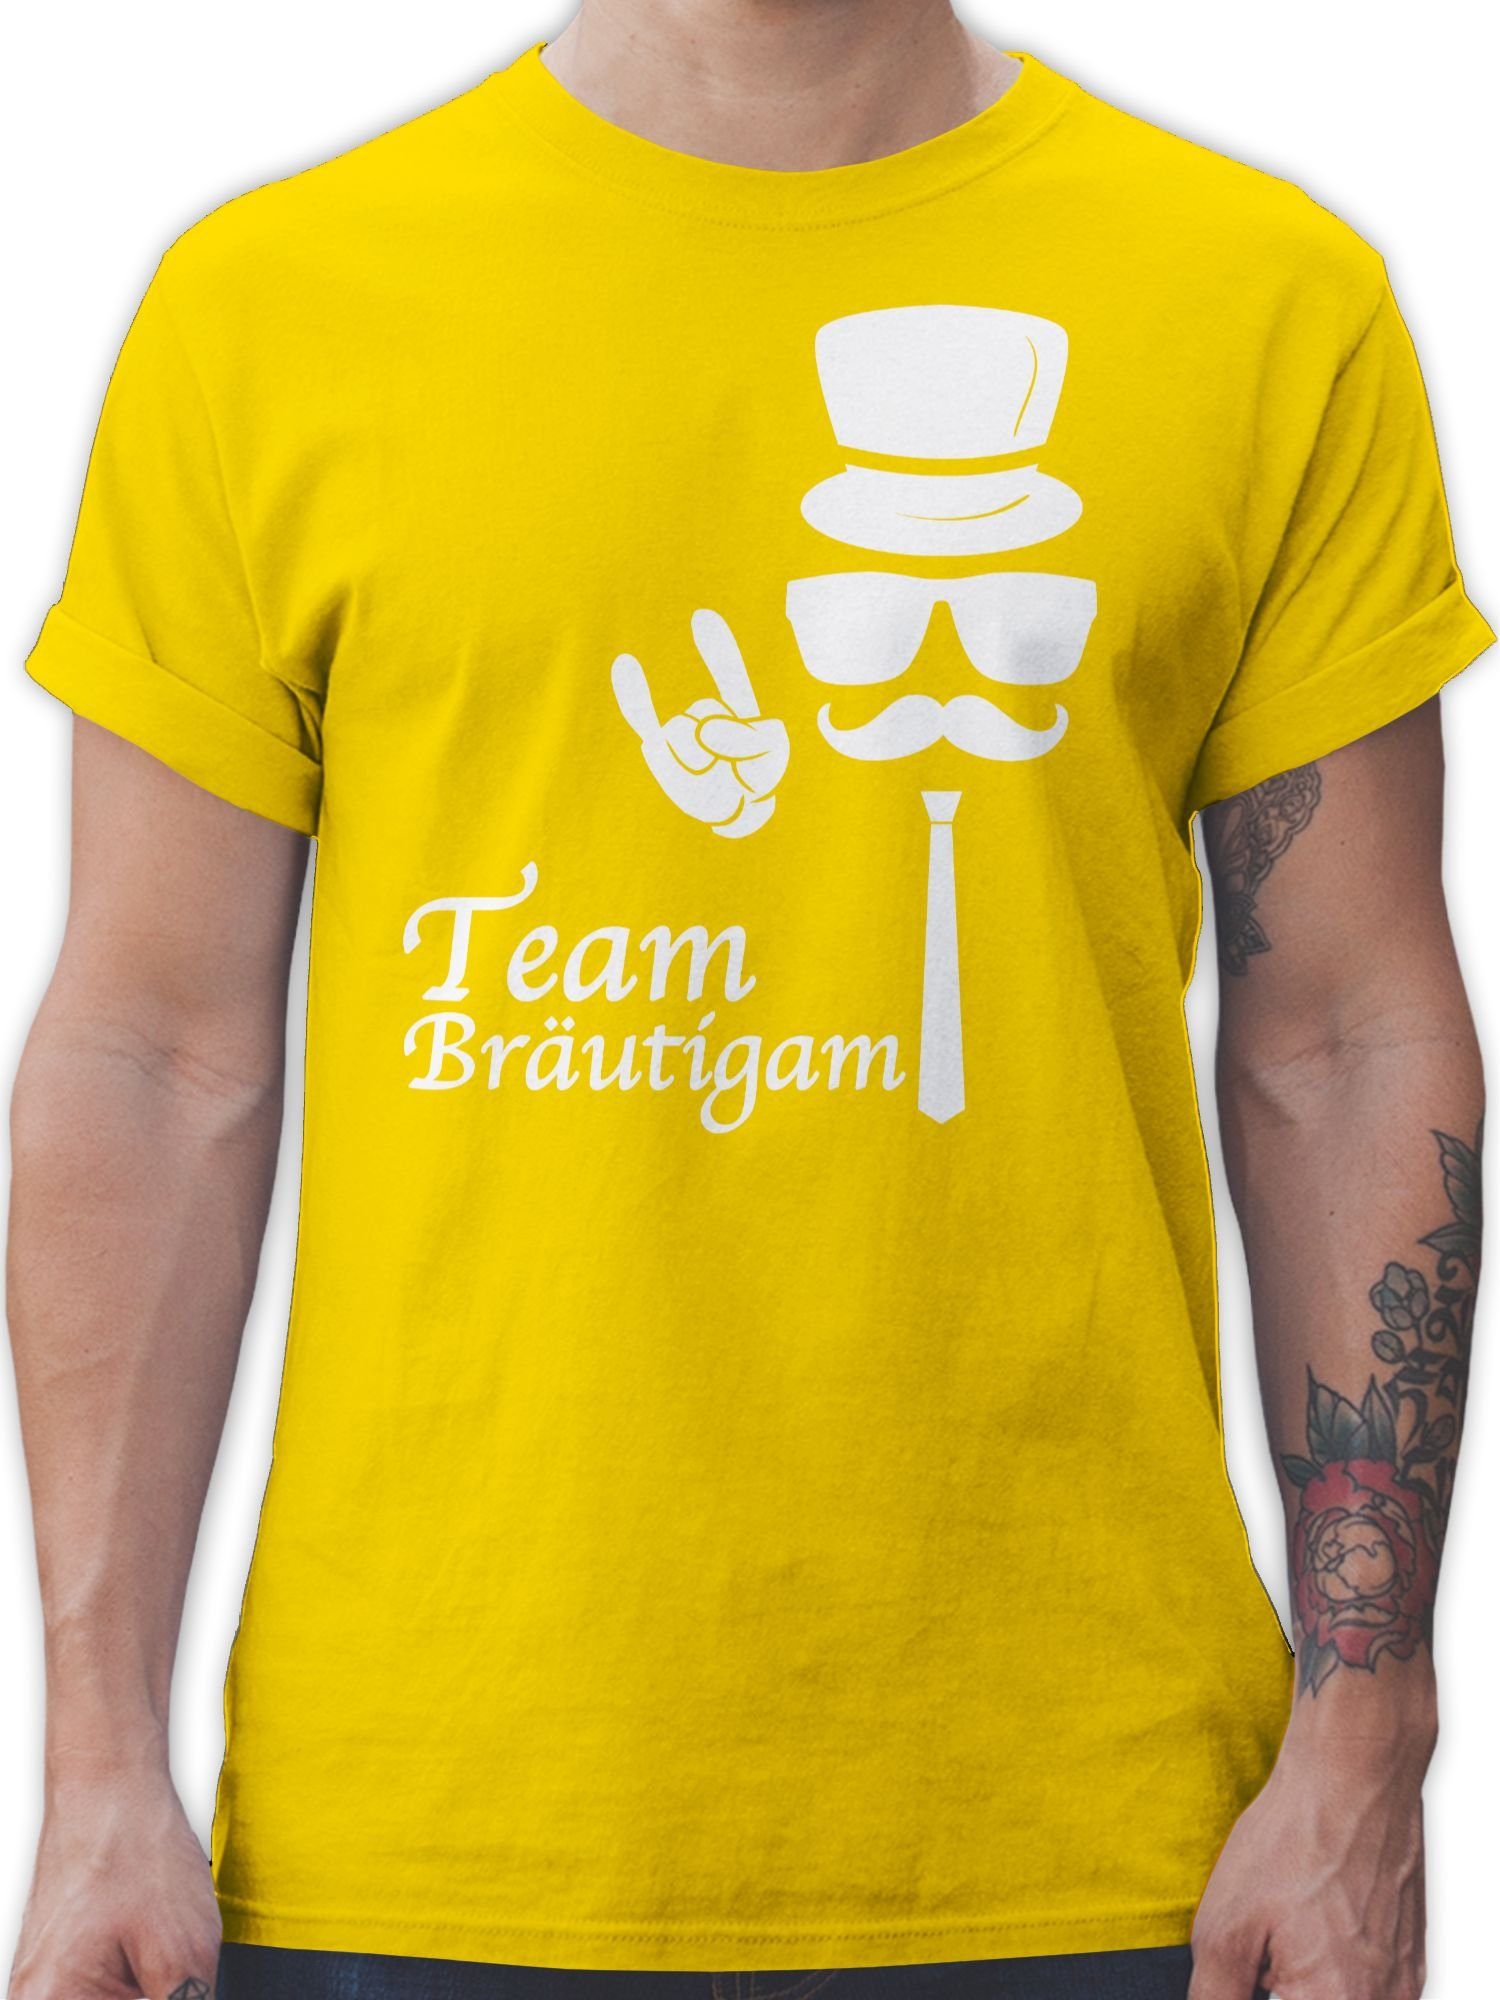 Shirtracer T-Shirt Team Bräutigam Hipster JGA Männer 3 Gelb